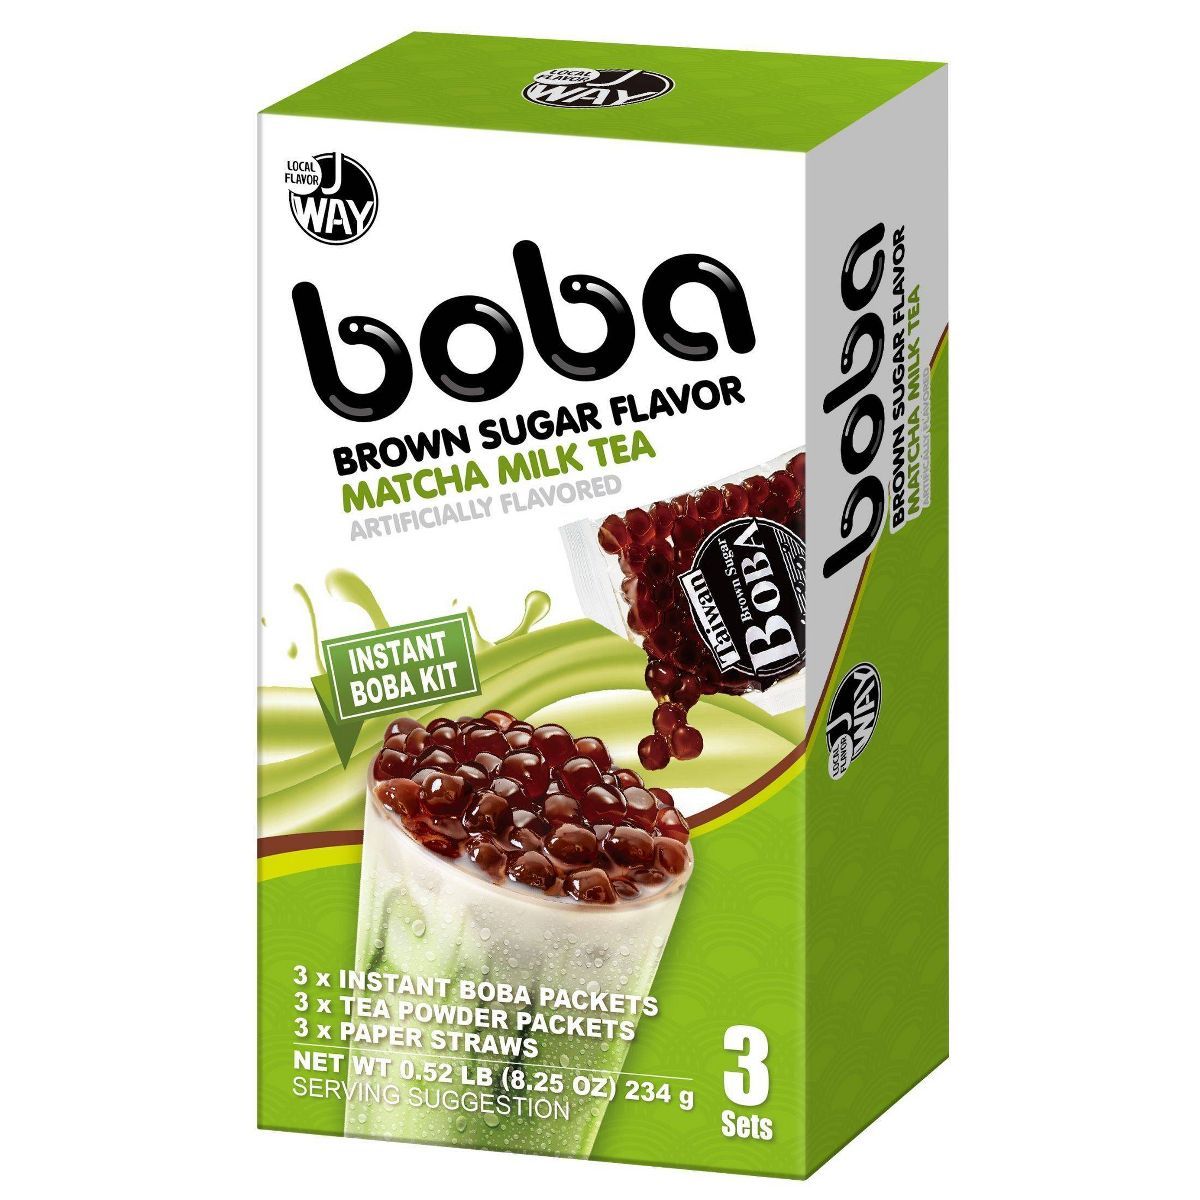 J Way Instant Boba Kit Matcha Latte Sweet Tea Variety - 8.25oz | Target